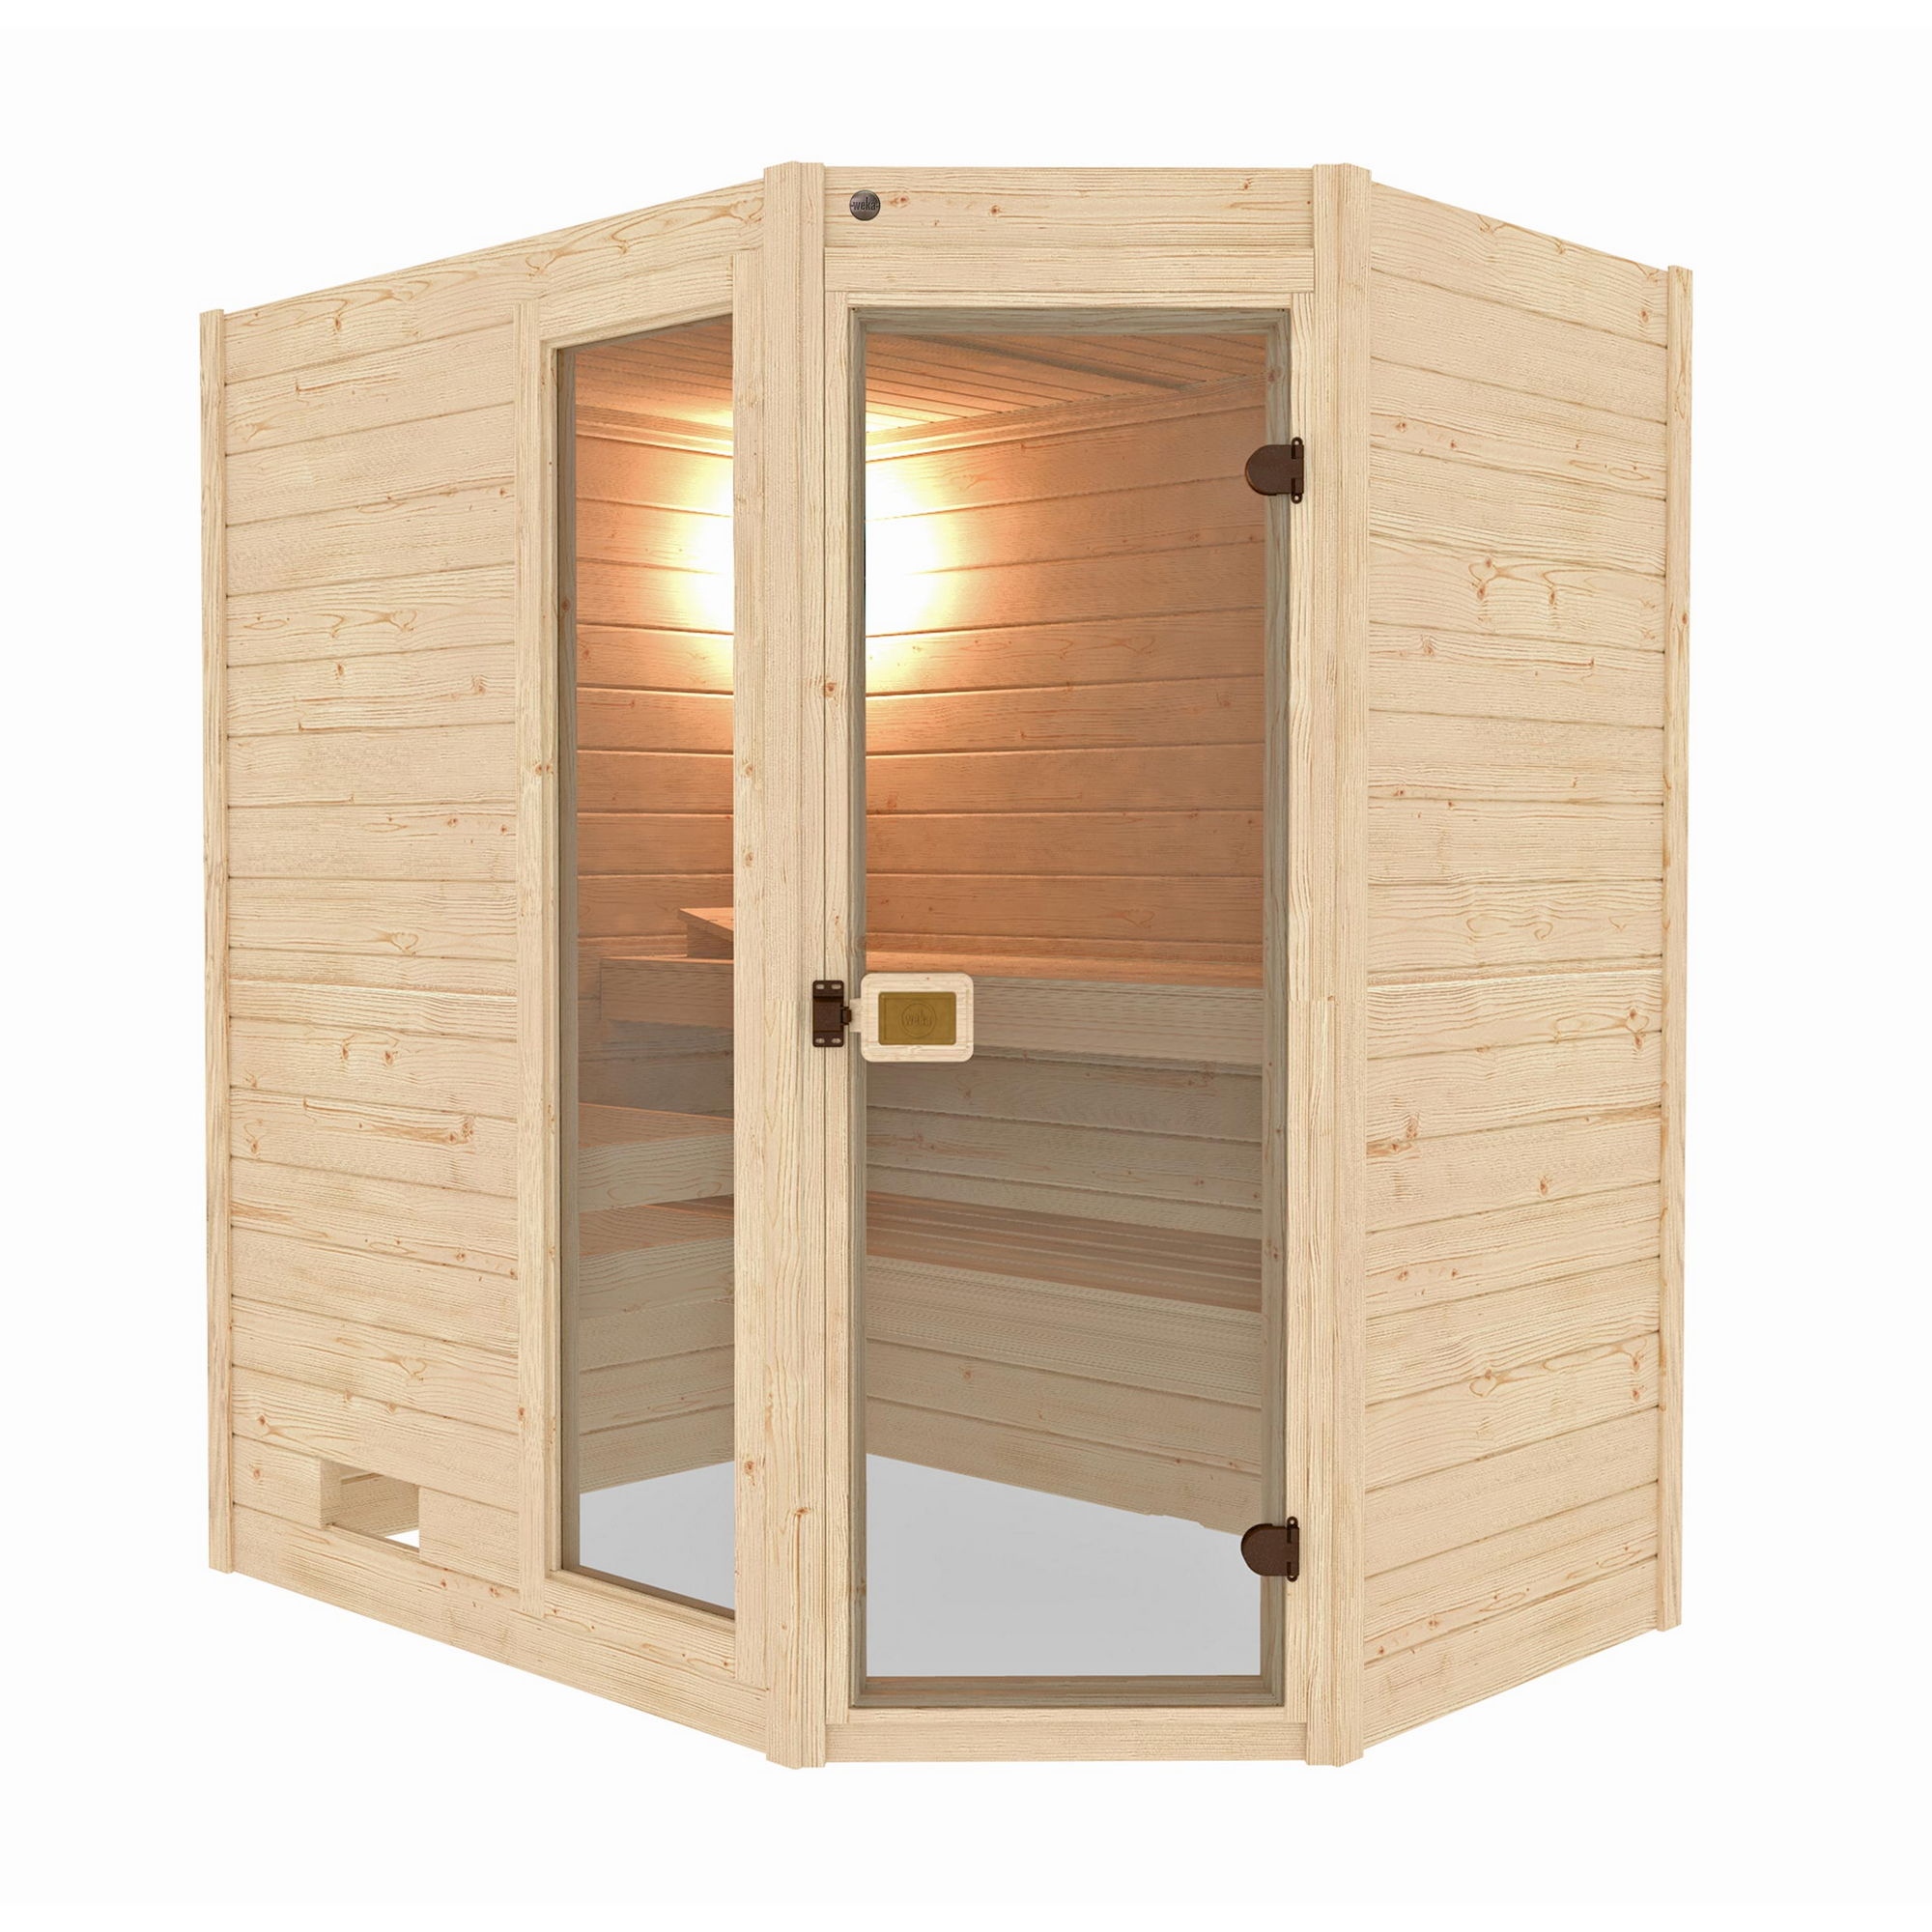 Massivholz-Sauna 'Valida 1 Eck' mit 5,4 kW K-Ofenset, integrierter Steuerung, Glastür, Fenster 187 x 137 x 203,5 cm + product picture